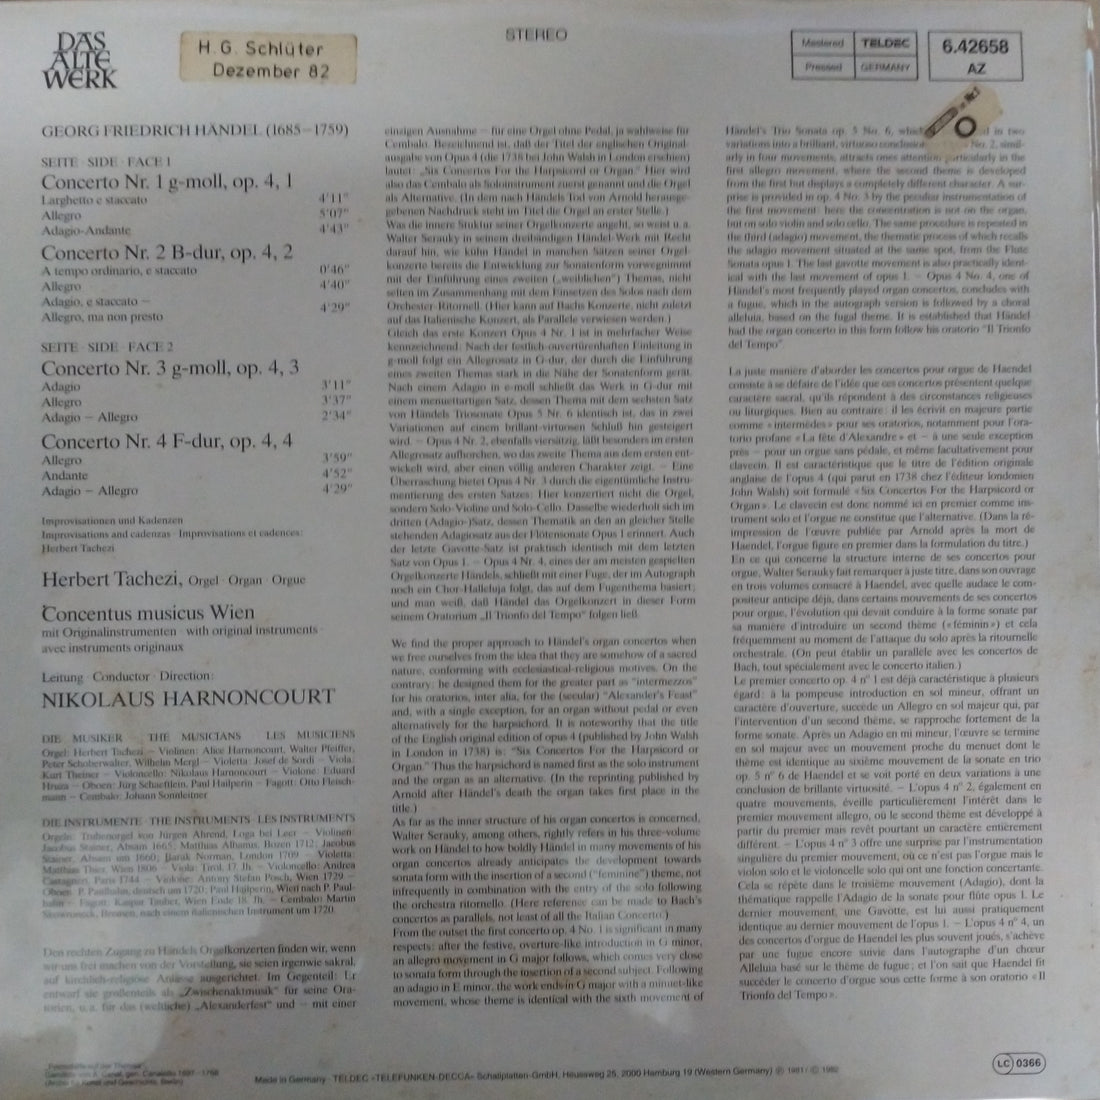 Georg Friedrich Händel - Herbert Tachezi, Concentus Musicus Wien, Nikolaus Harnoncourt - Orgelkonzerte (Vol. 1) Op. 4, Nr. 1-4 (Vinyl) (VG+)